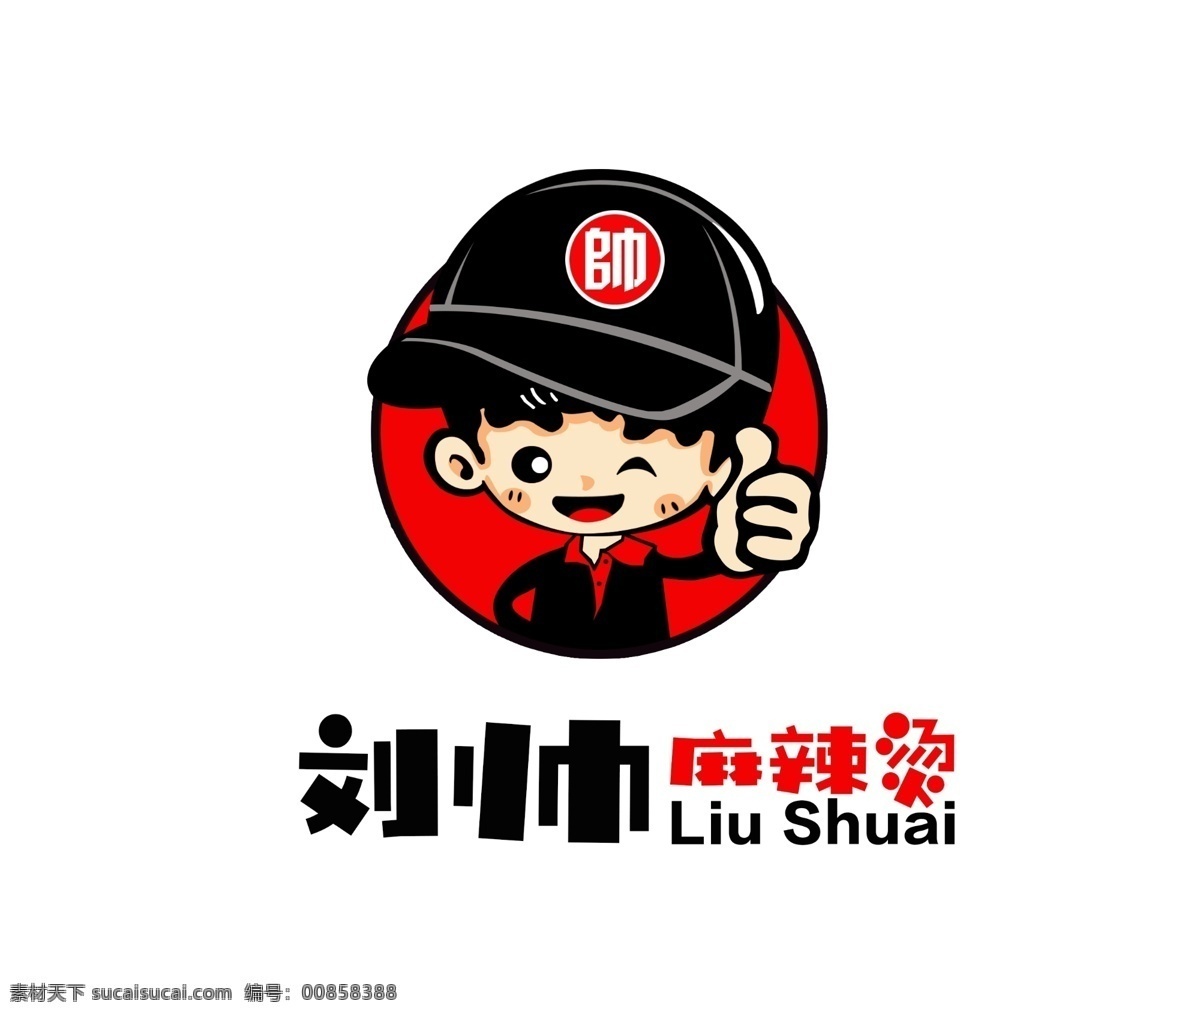 刘帅麻辣烫 刘帅 麻辣烫 刘帅logo vi 麻辣烫标志 logo设计